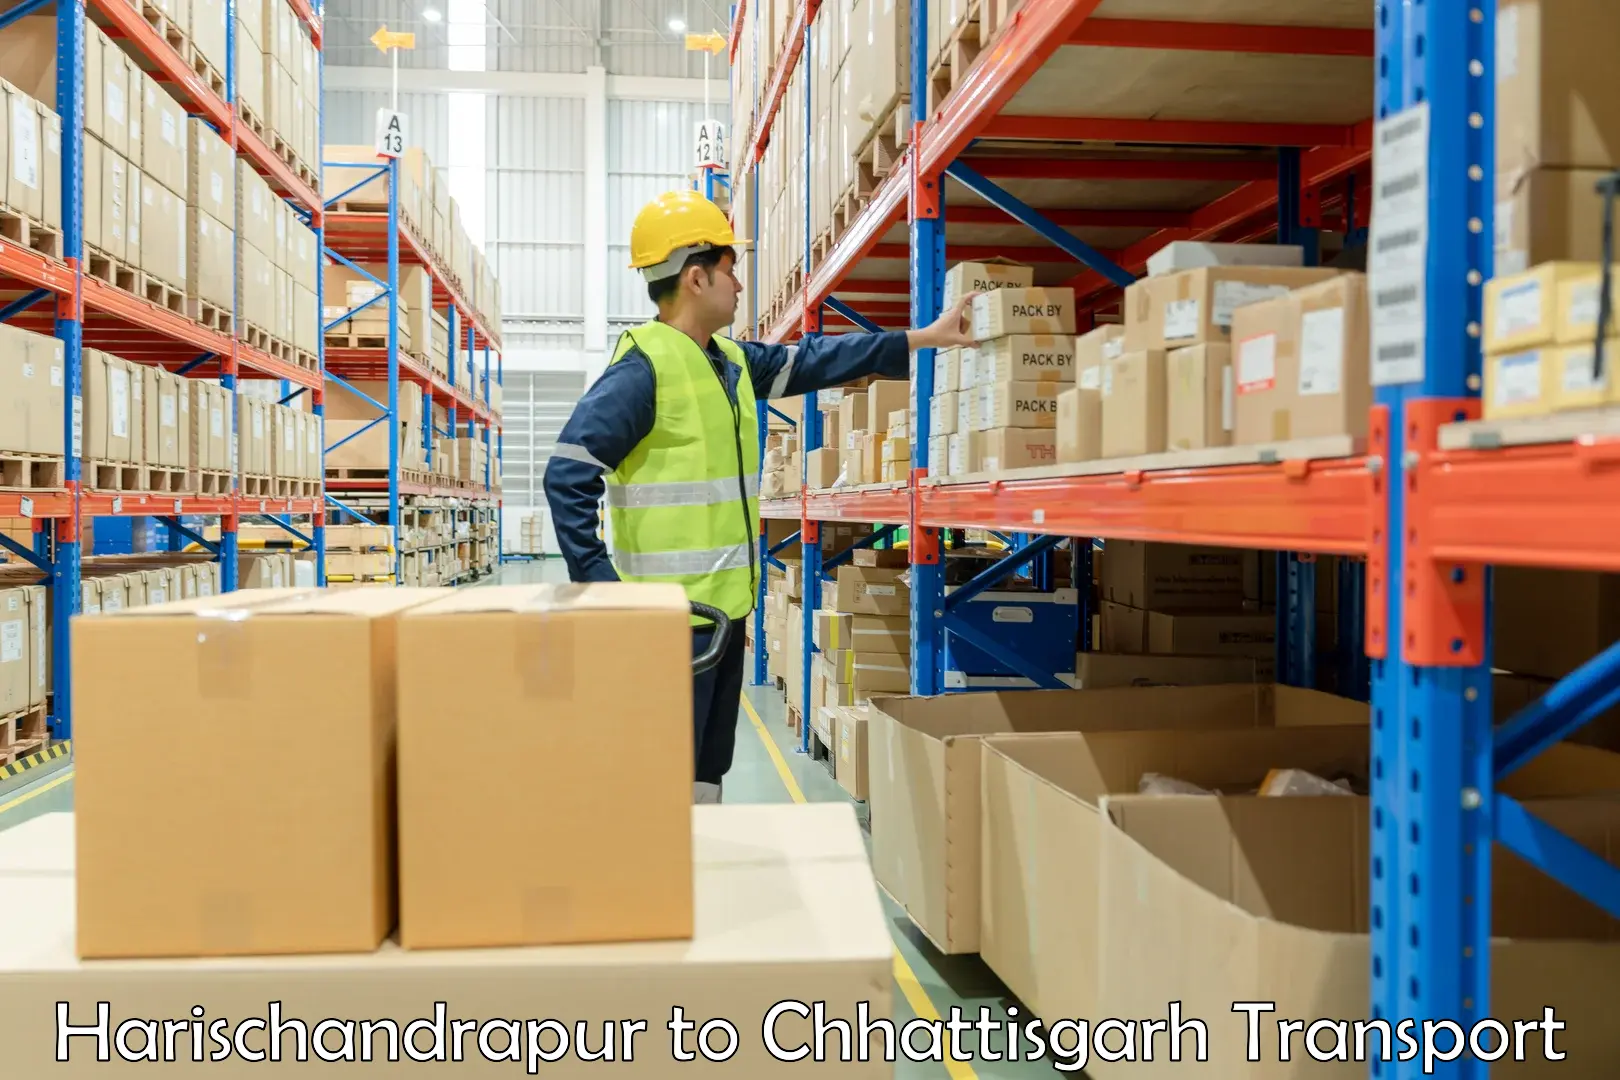 International cargo transportation services in Harischandrapur to Pratappur